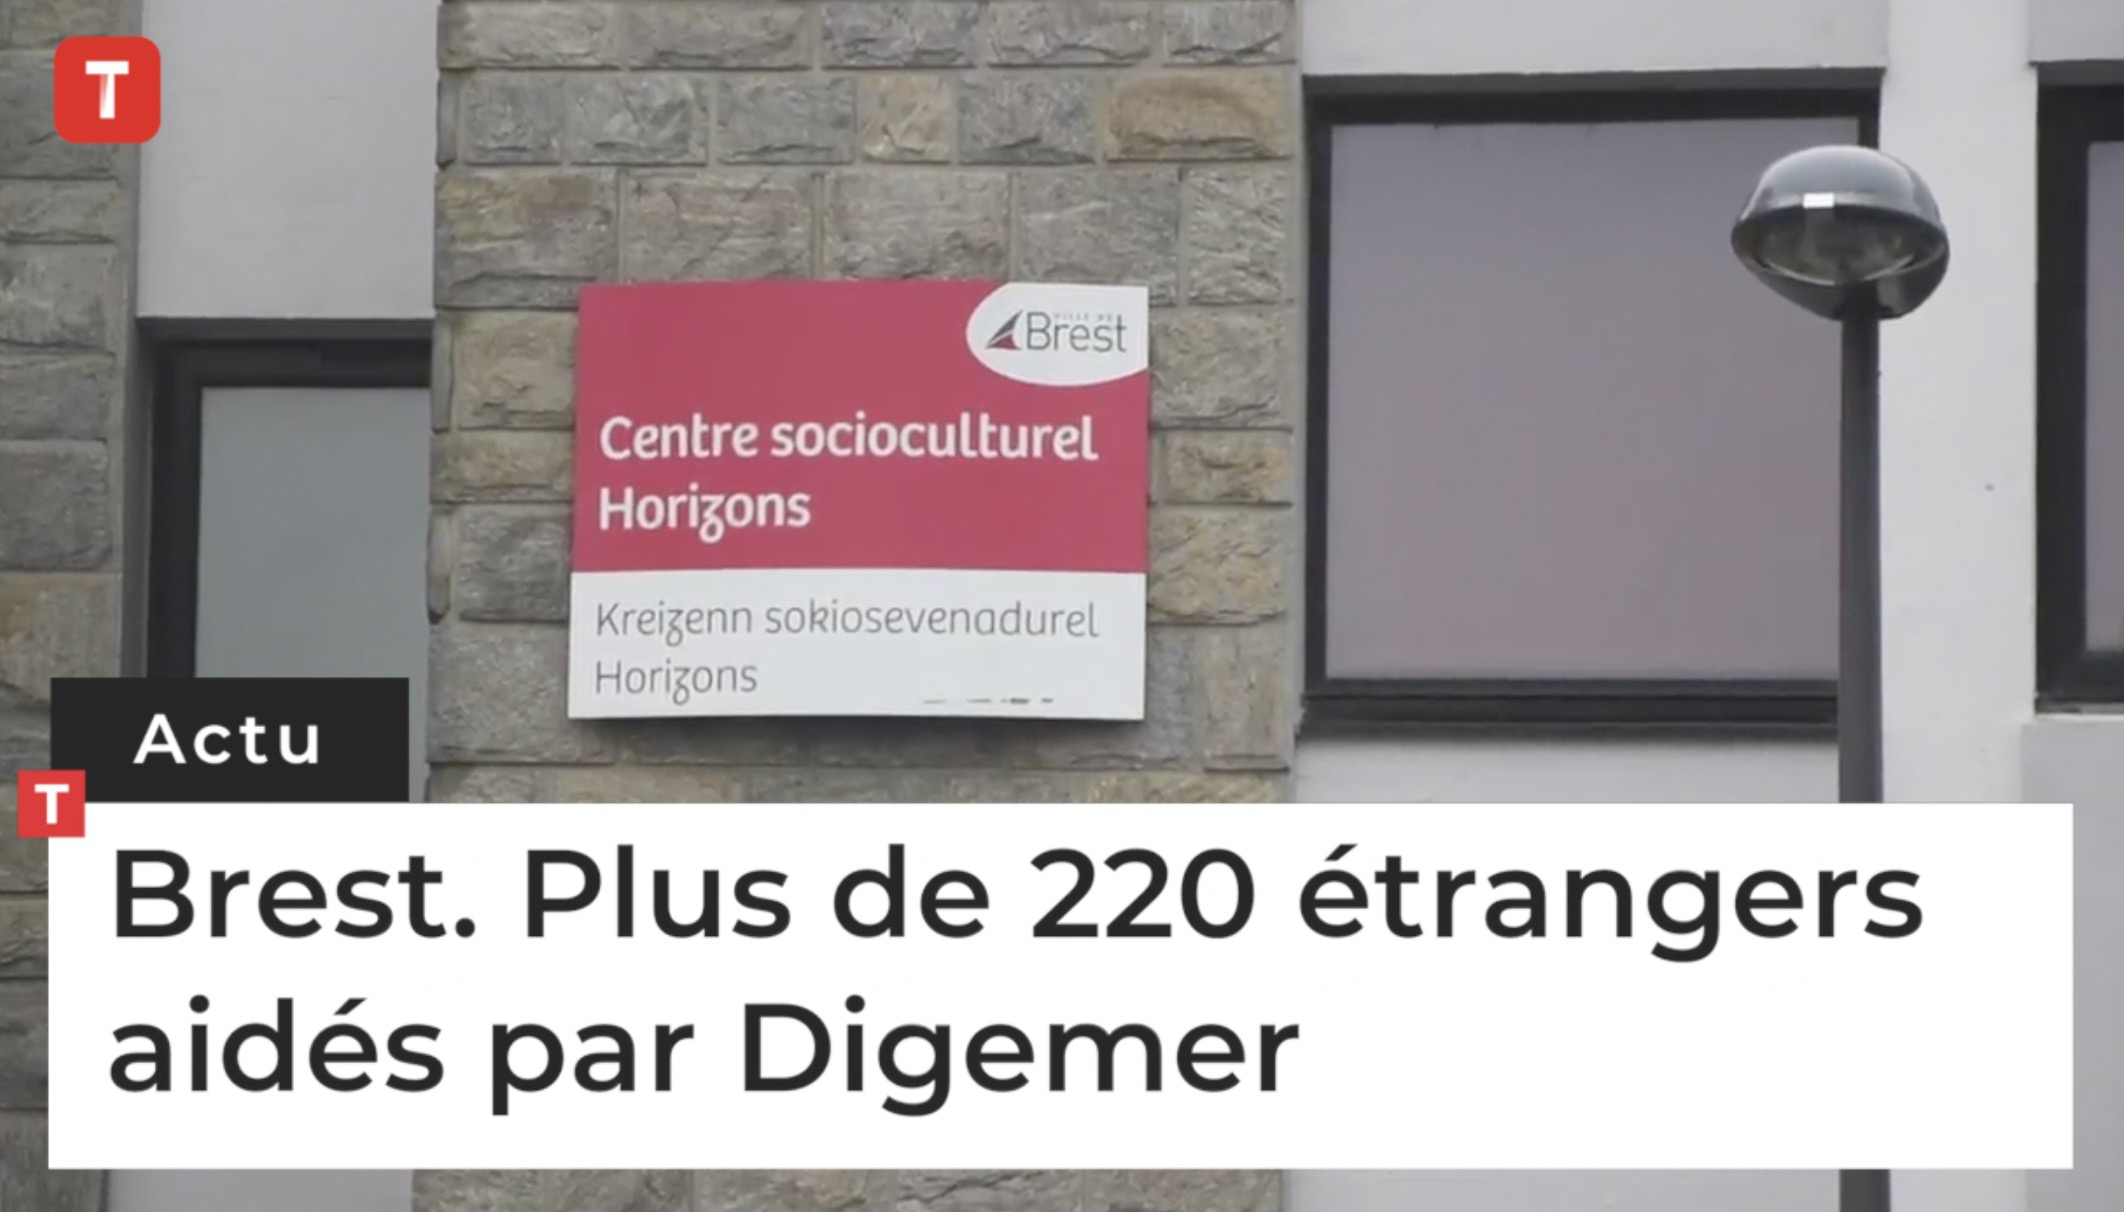 Brest. Plus de 220 étrangers aidés par Digemer (Le Télégramme)